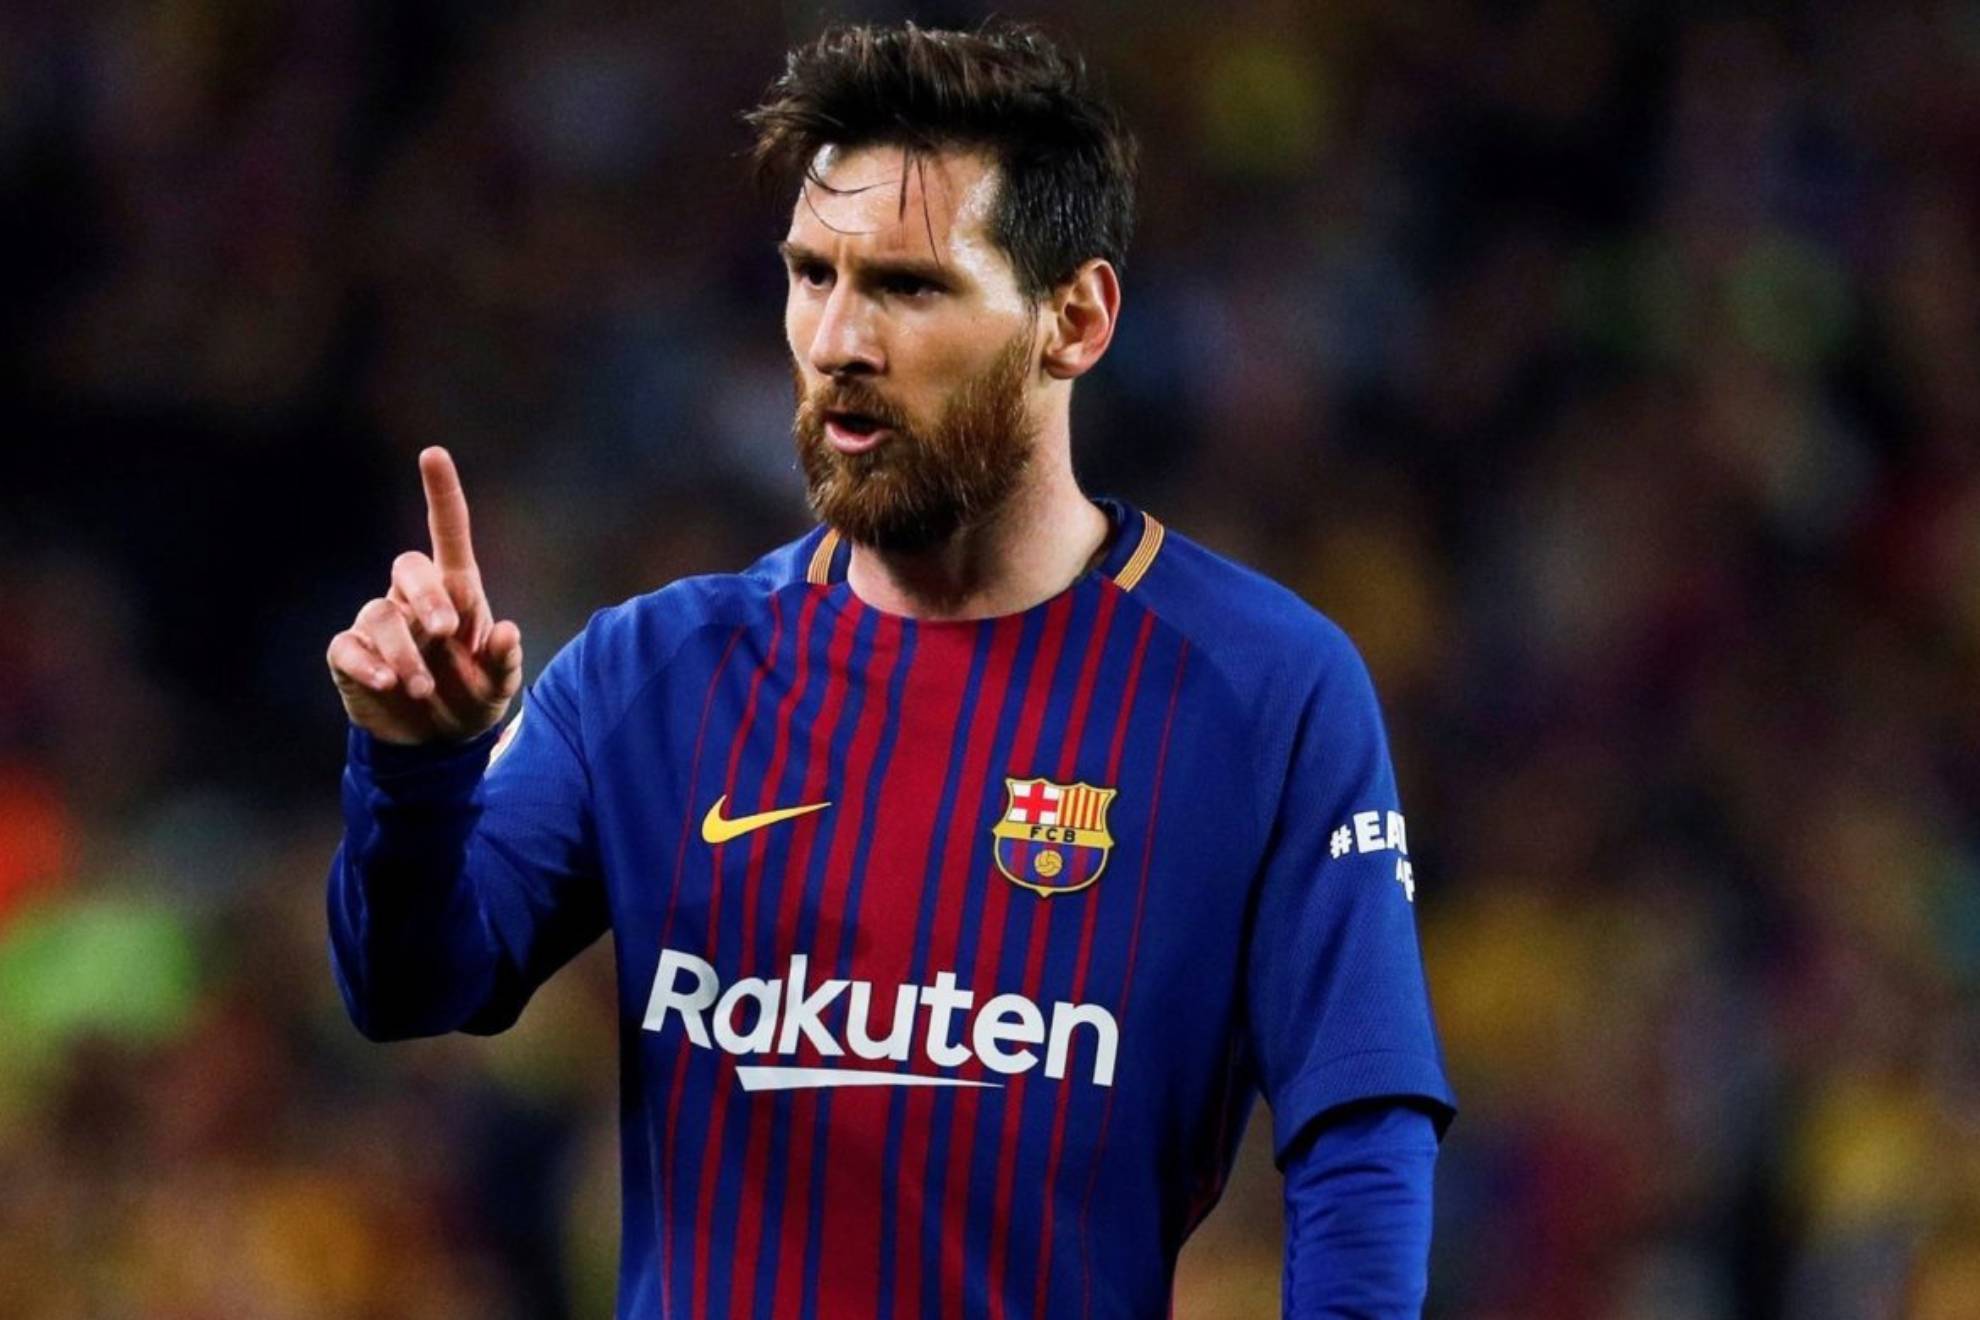 El Corrillo: "Laporta y Messi han interpretado su propia opereta para  intentar quedar bien con los aficionados del Barça"